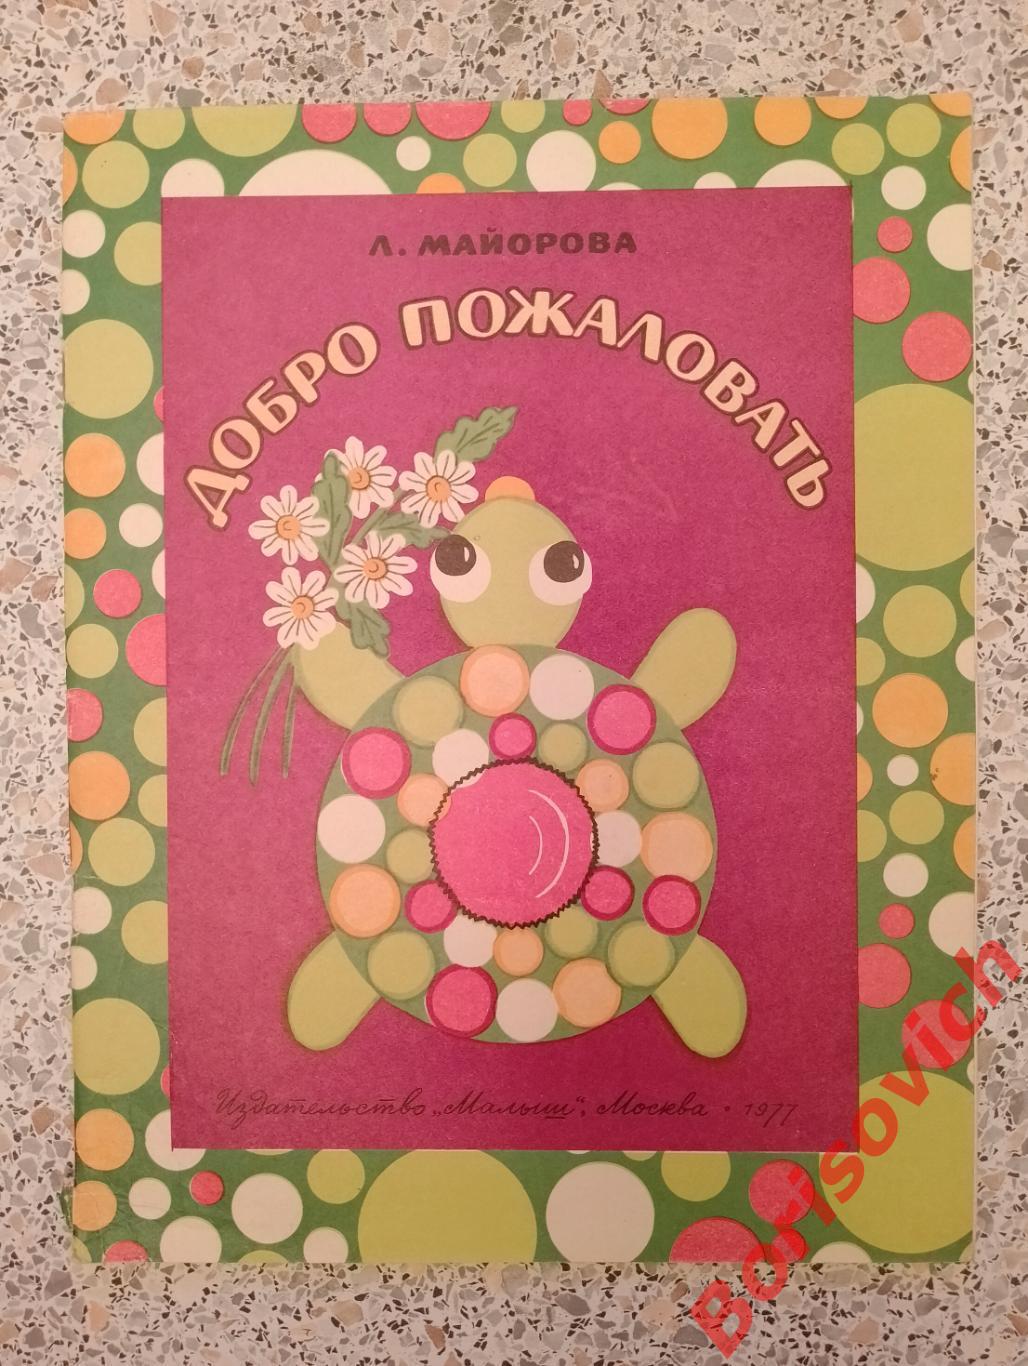 Альбом самоделок ДОБРО ПОЖАЛОВАТЬ Издательство Малыш 1977 г